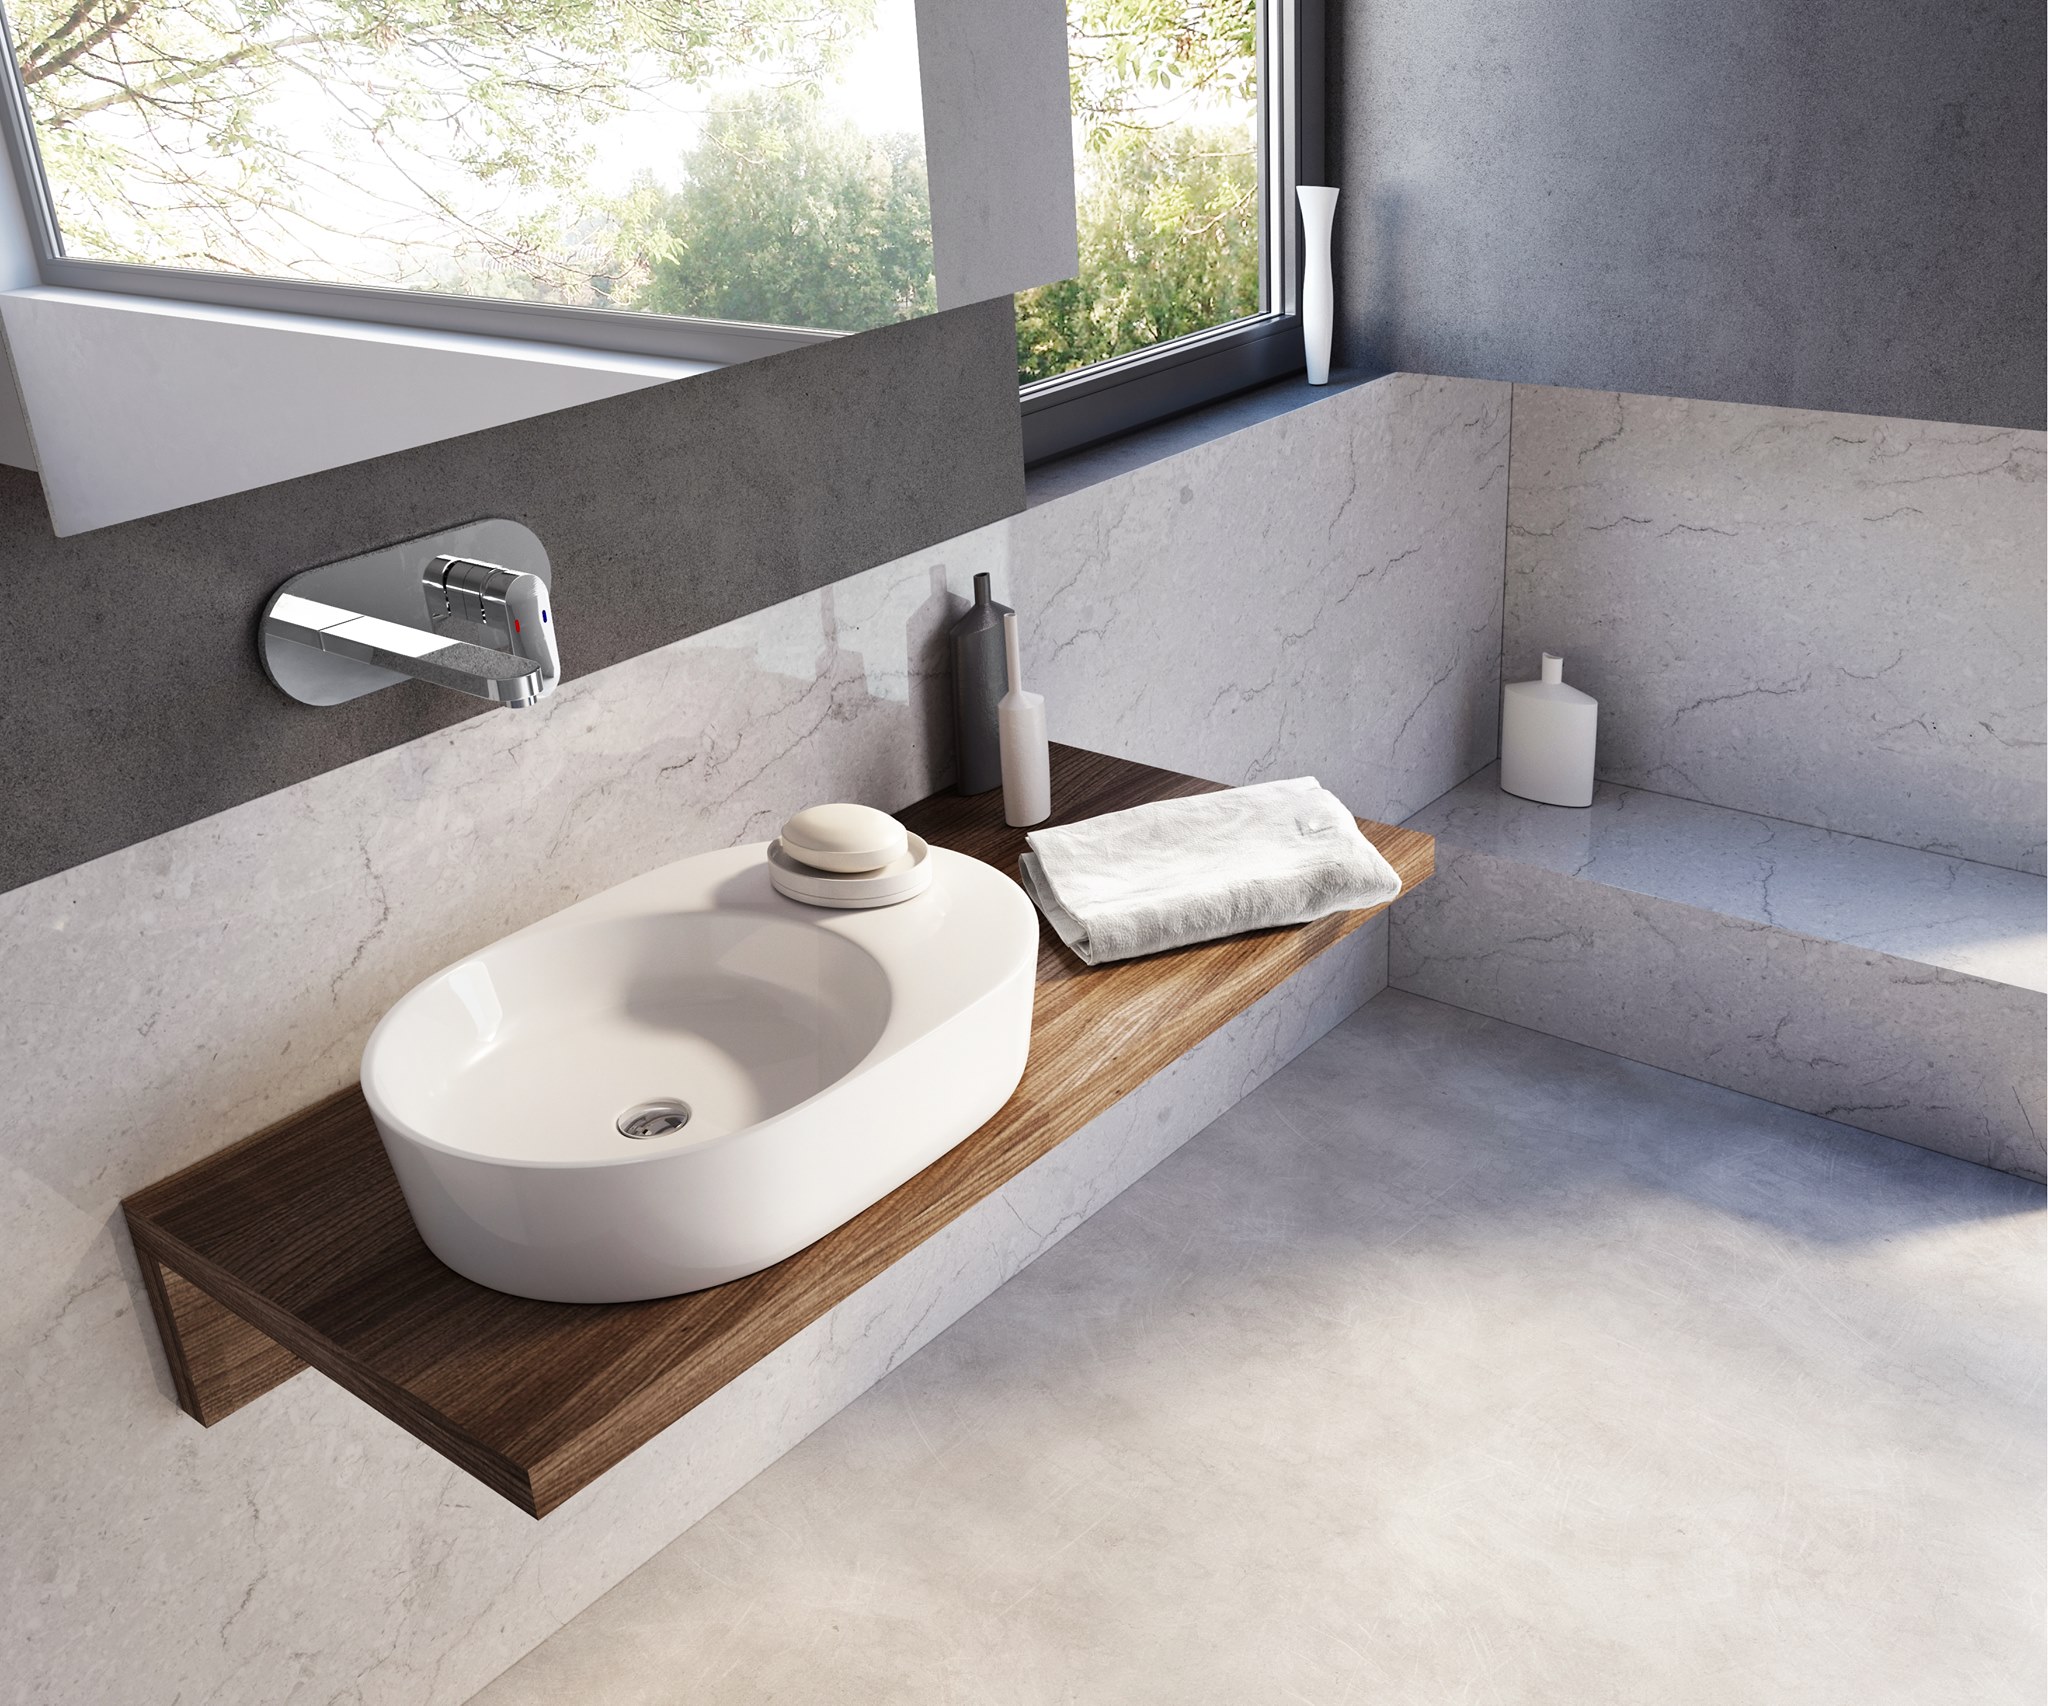 pultra ültethető mosdó termékcsalád kört idéző formái izgalmas megoldást jelentenek a fürdőszobában.